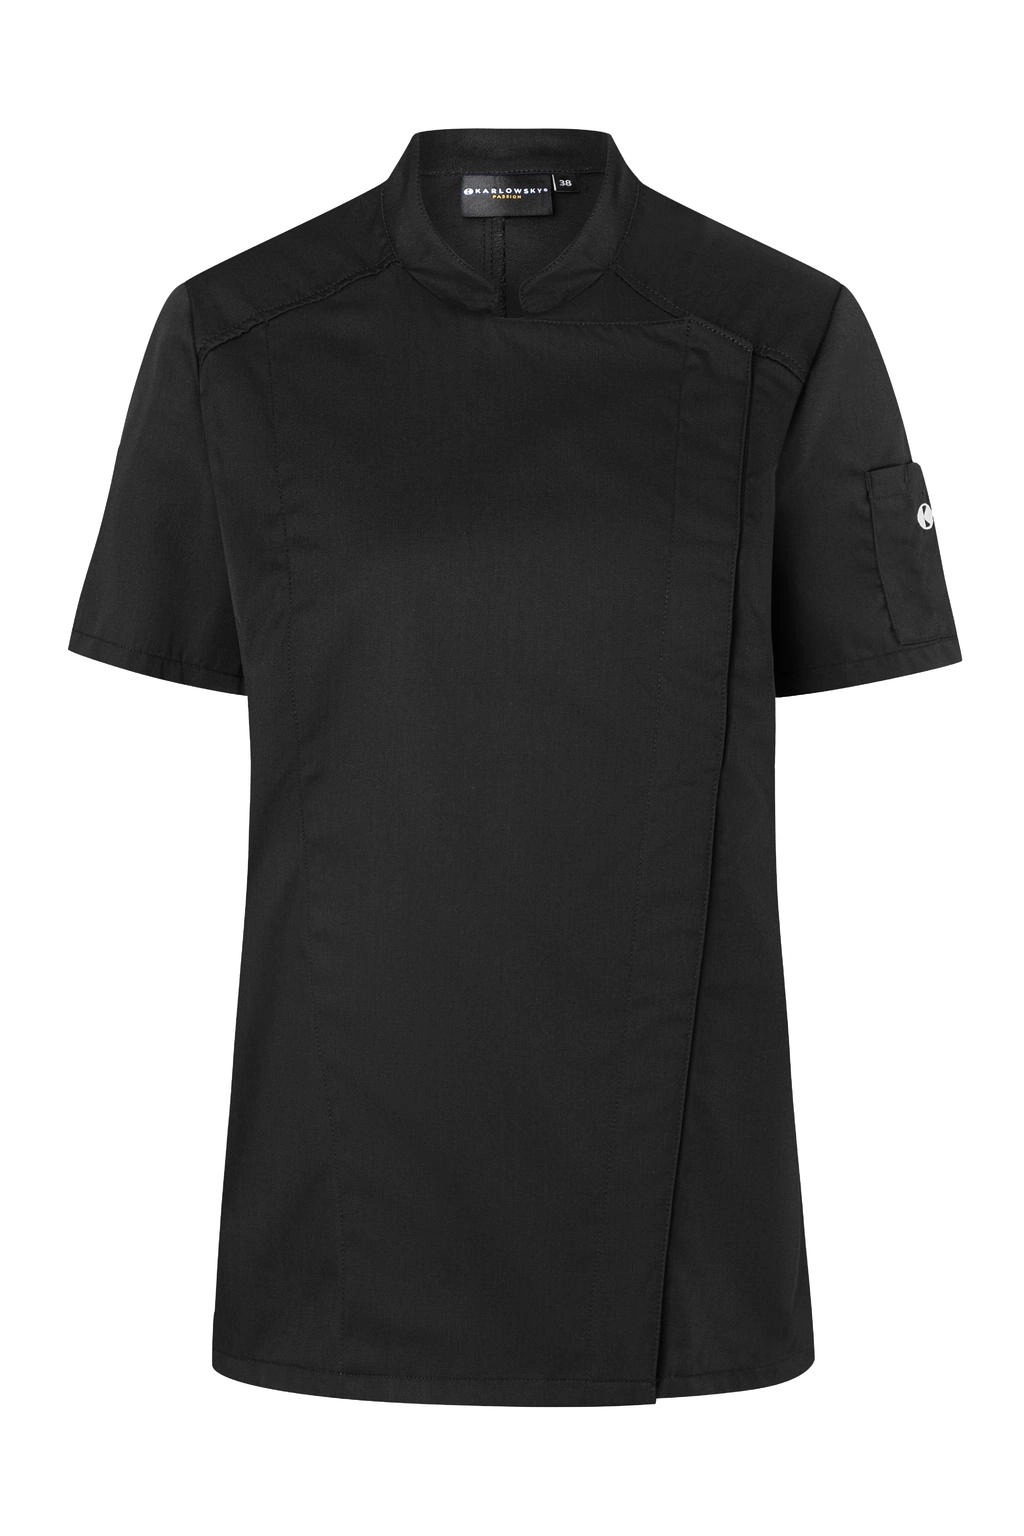 Short-Sleeve Ladies` Chef Jacket Modern-Look zum Besticken und Bedrucken in der Farbe Black mit Ihren Logo, Schriftzug oder Motiv.